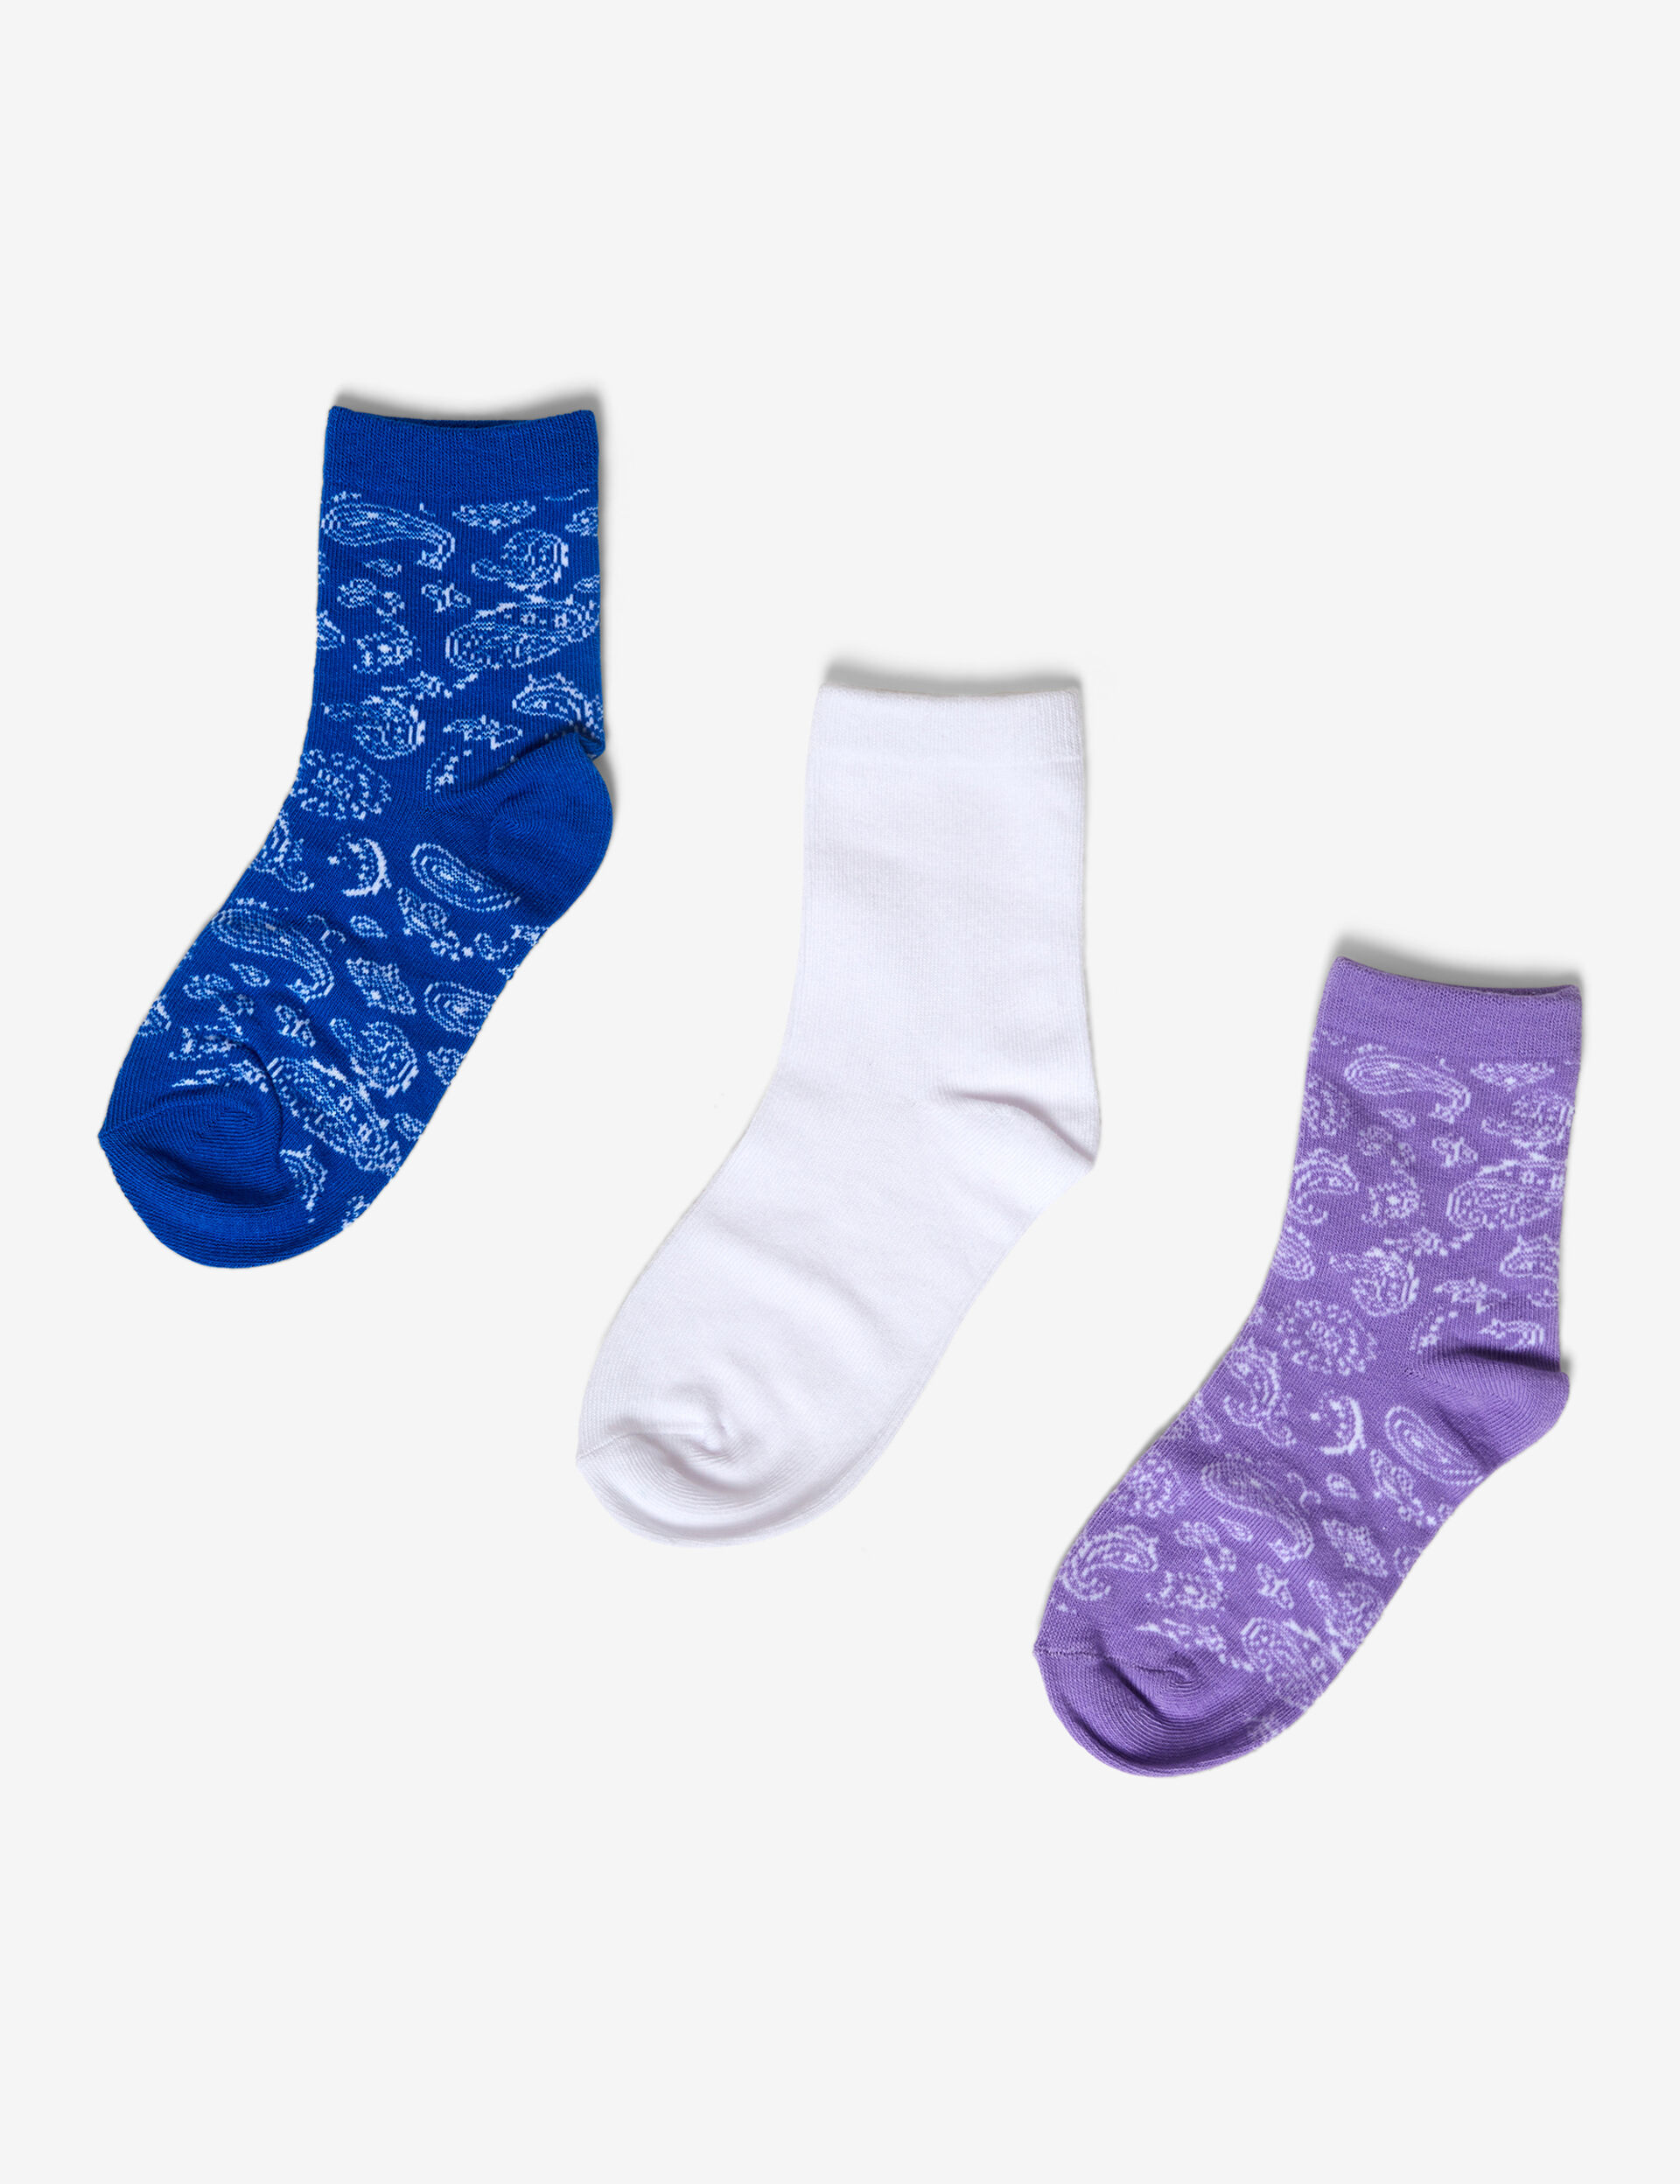 Patterned cashmere socks